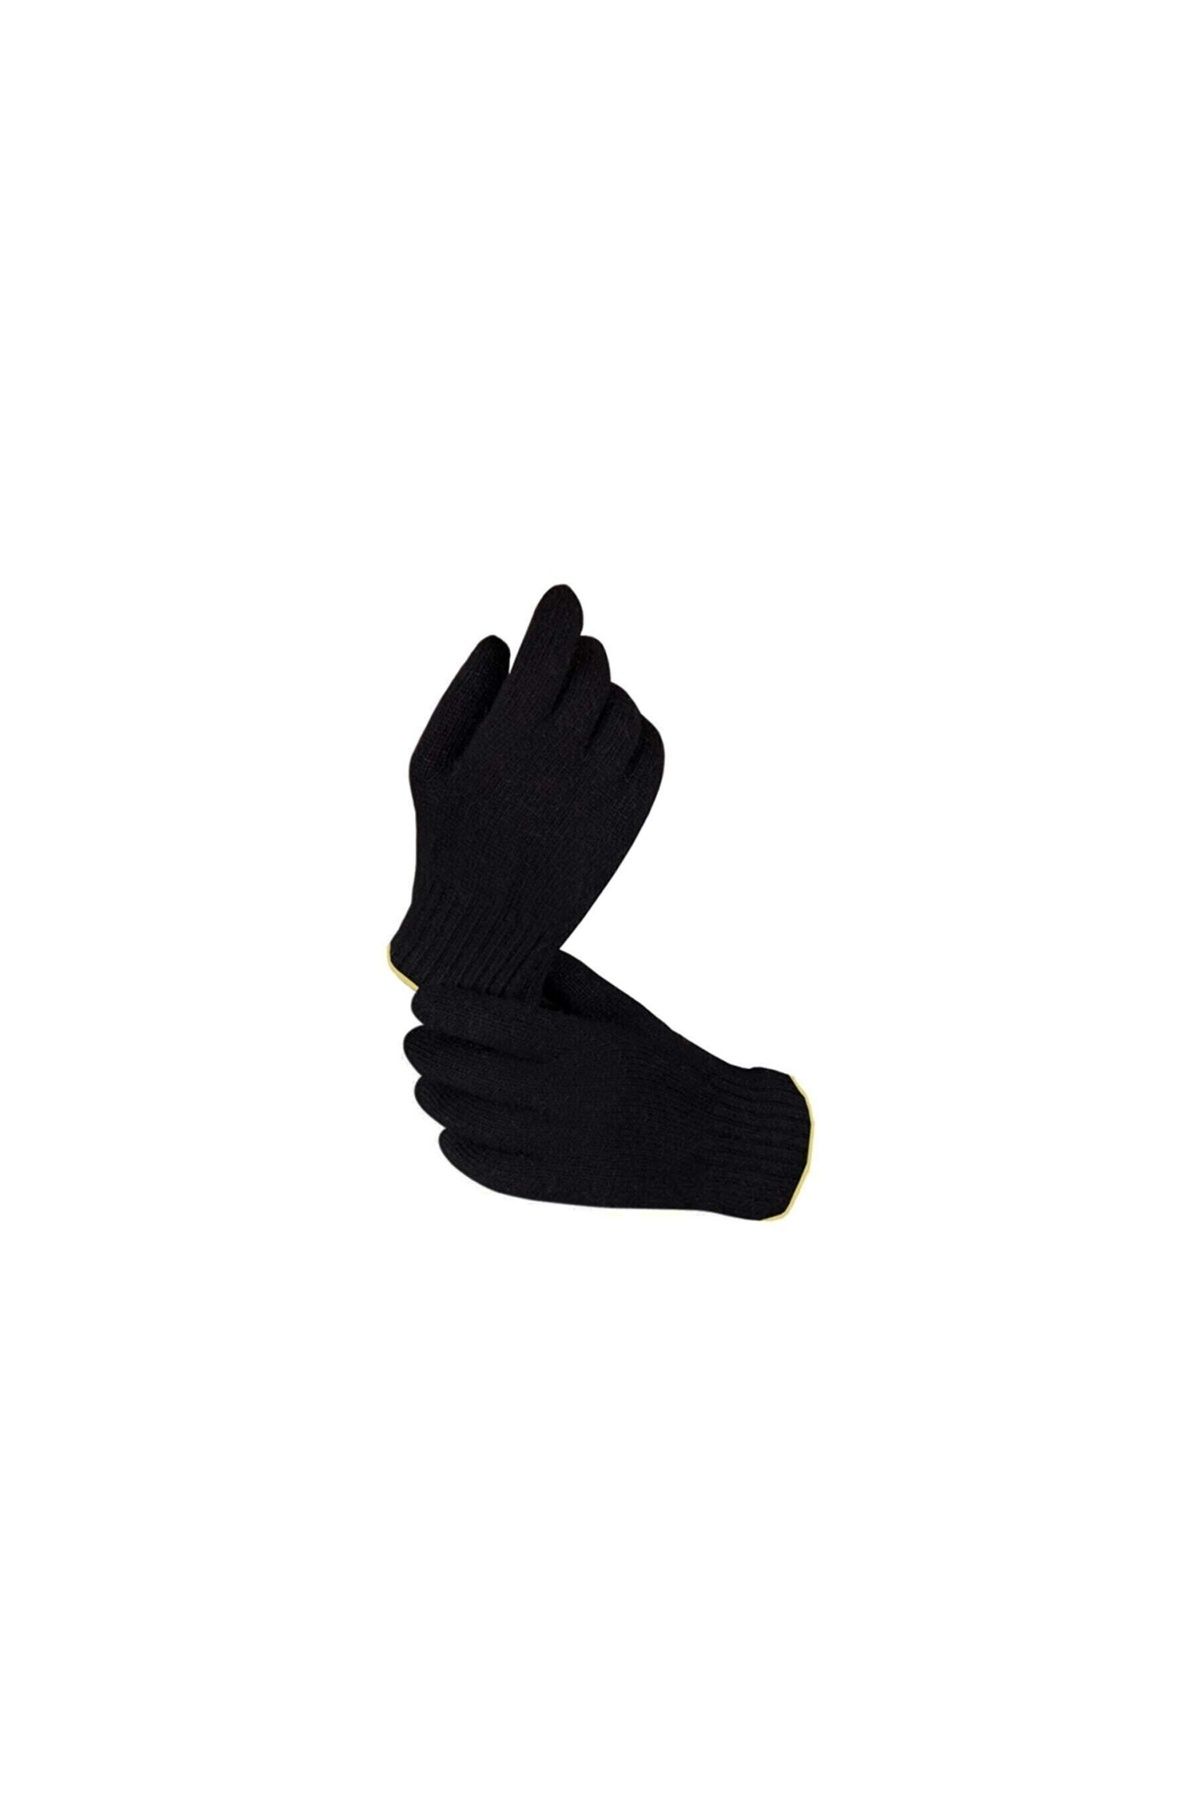 Royaleks Orta Kalın Siyah Sıcak Tutan Yün Kışlık Kadın Erkek Eldiven Unisex 1 Çift